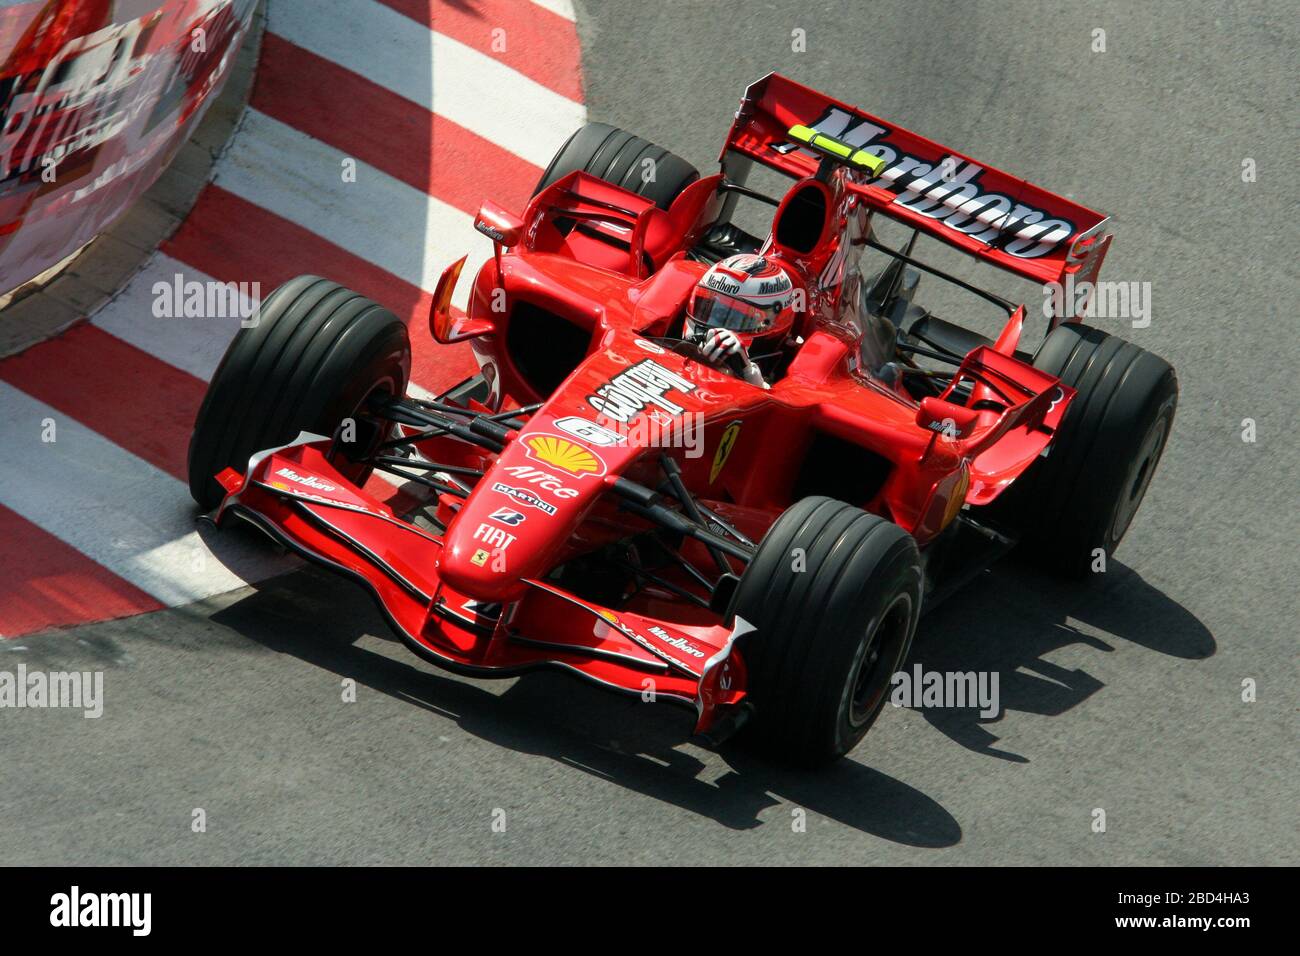 Kimi Raikkonen, Ferrari F2007, Monaco GP 2007, Montecarlo Stock Photo -  Alamy